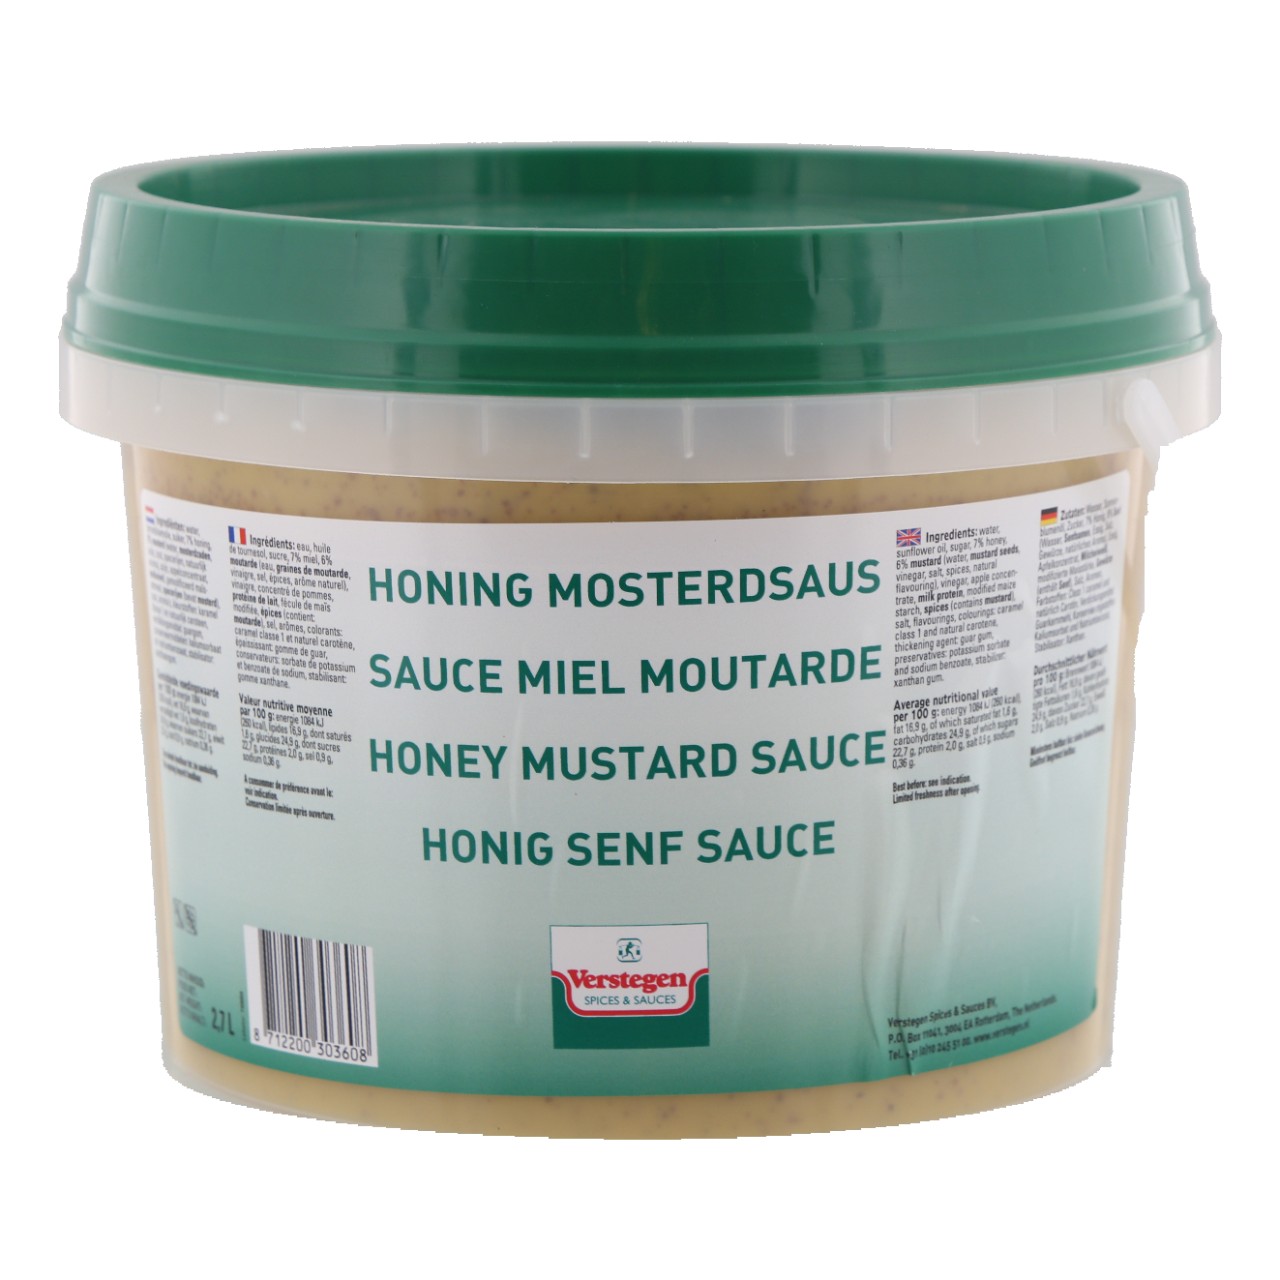 Honing mosterdsaus